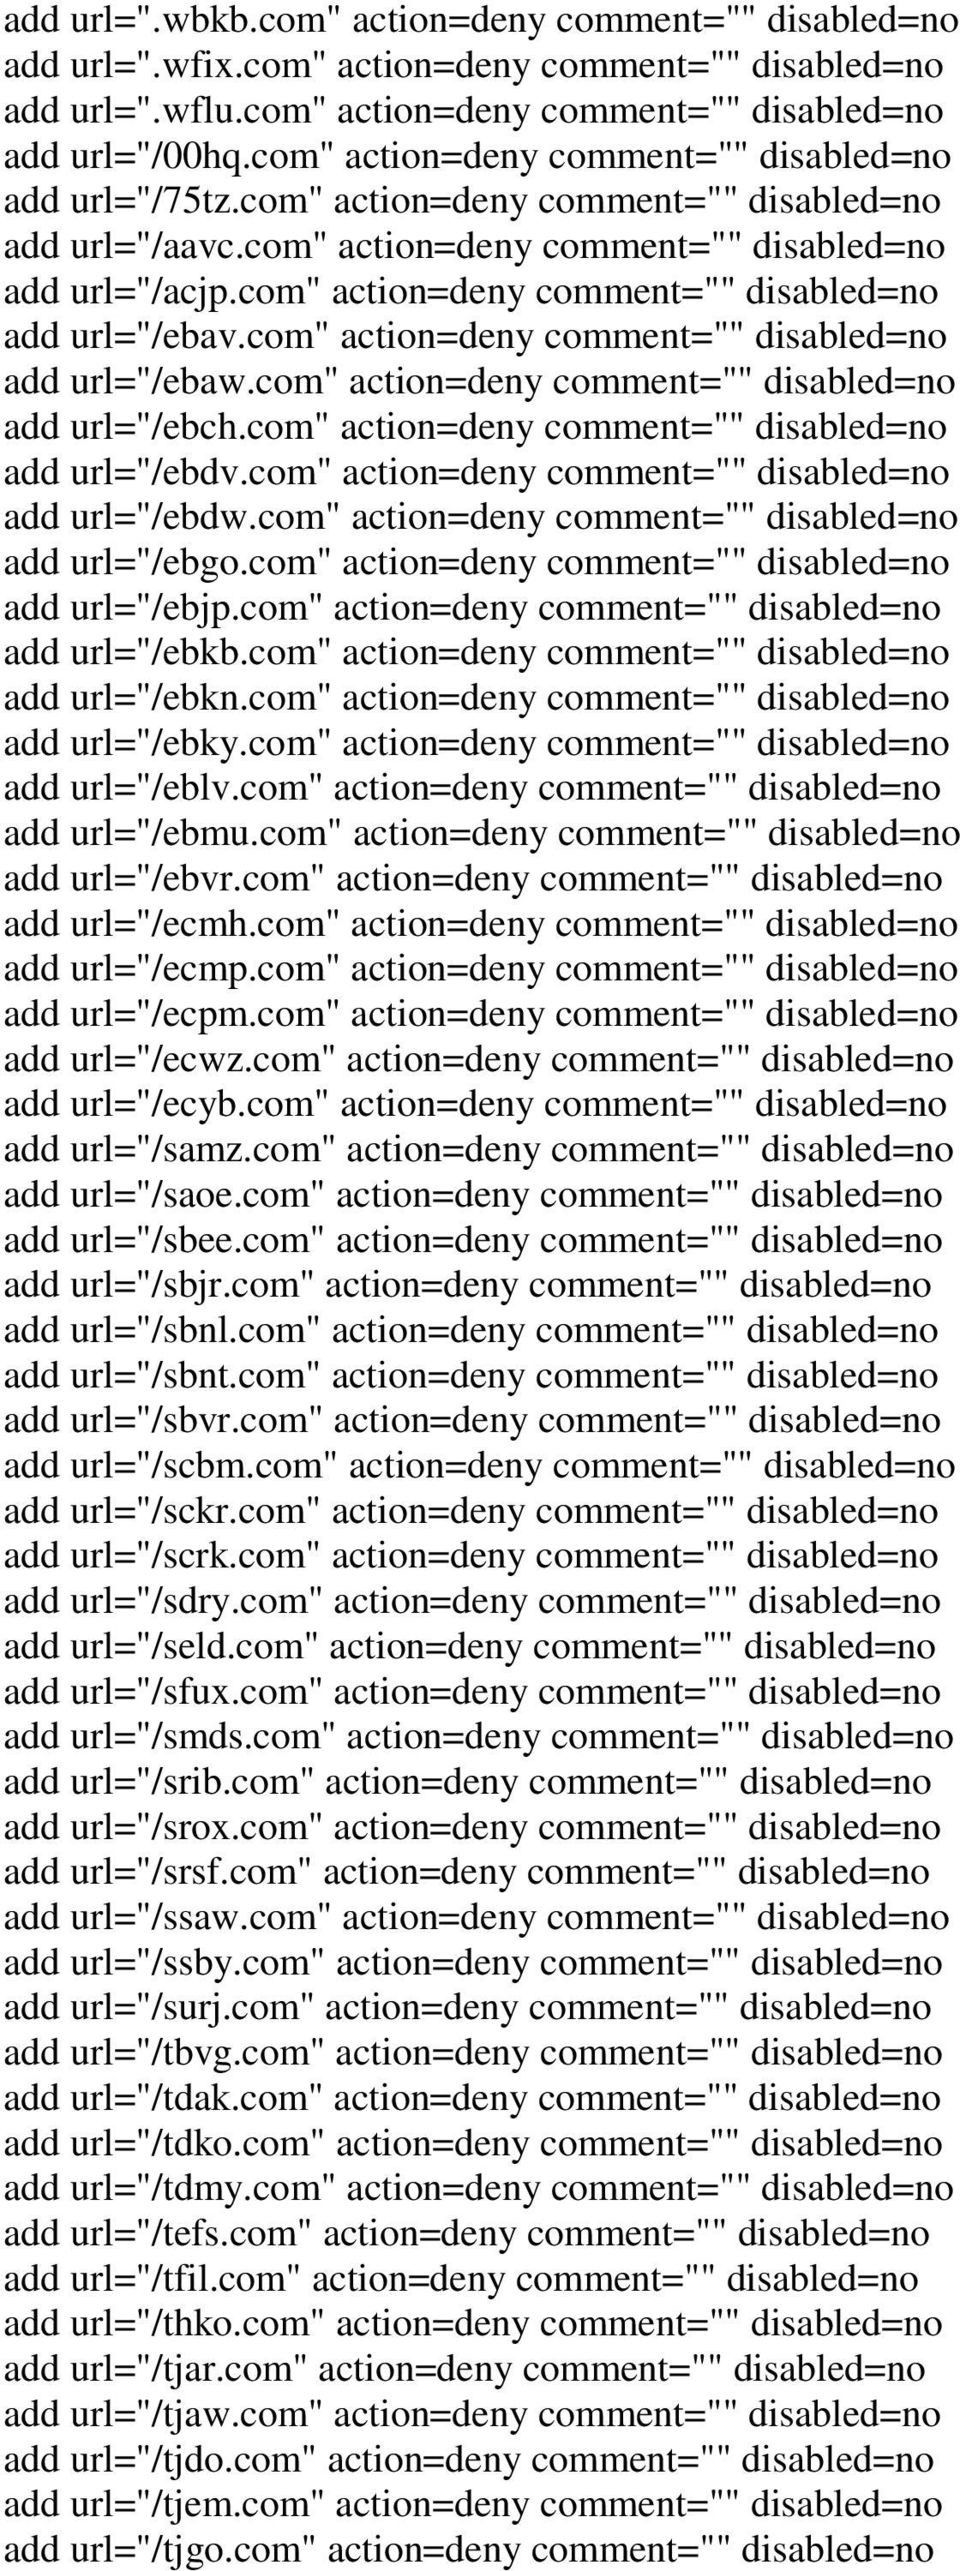 com" action=deny comment="" add url="/ebch.com" action=deny comment="" add url="/ebdv.com" action=deny comment="" add url="/ebdw.com" action=deny comment="" add url="/ebgo.